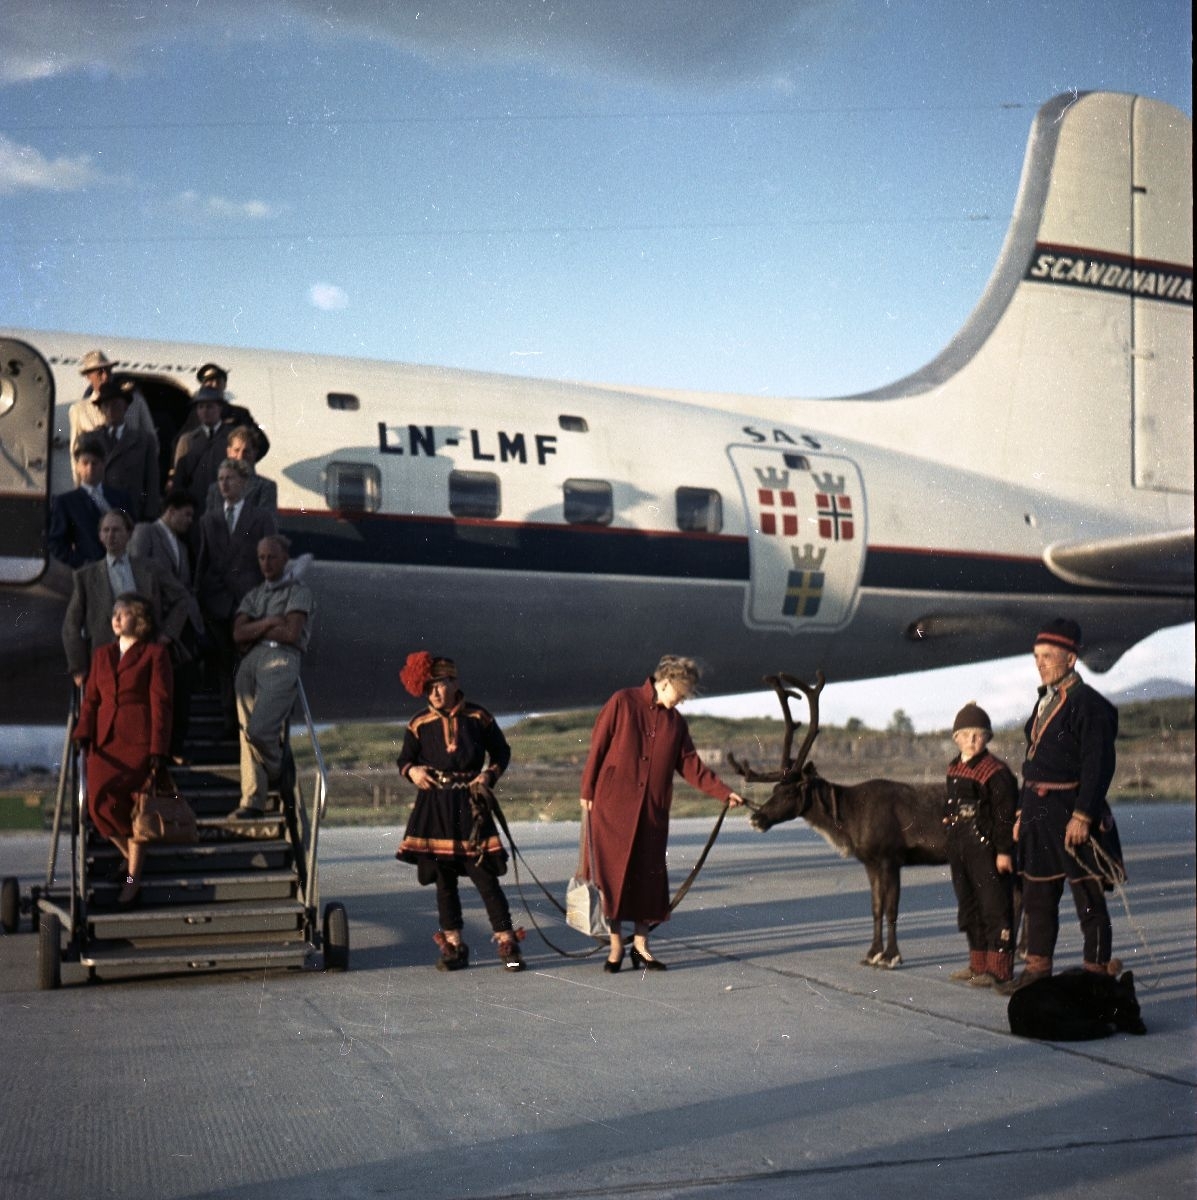 Flypassasjerer ble møtt av familien Karlstad, hunden Dilko, et reinsdyr og turistforeningens guide, da de ankom Bodø flyplass med SAS’ «Midnattssol-ruta». Flyet «Agne Viking» var en DC-6B med registreringsnummer LN-LMF.